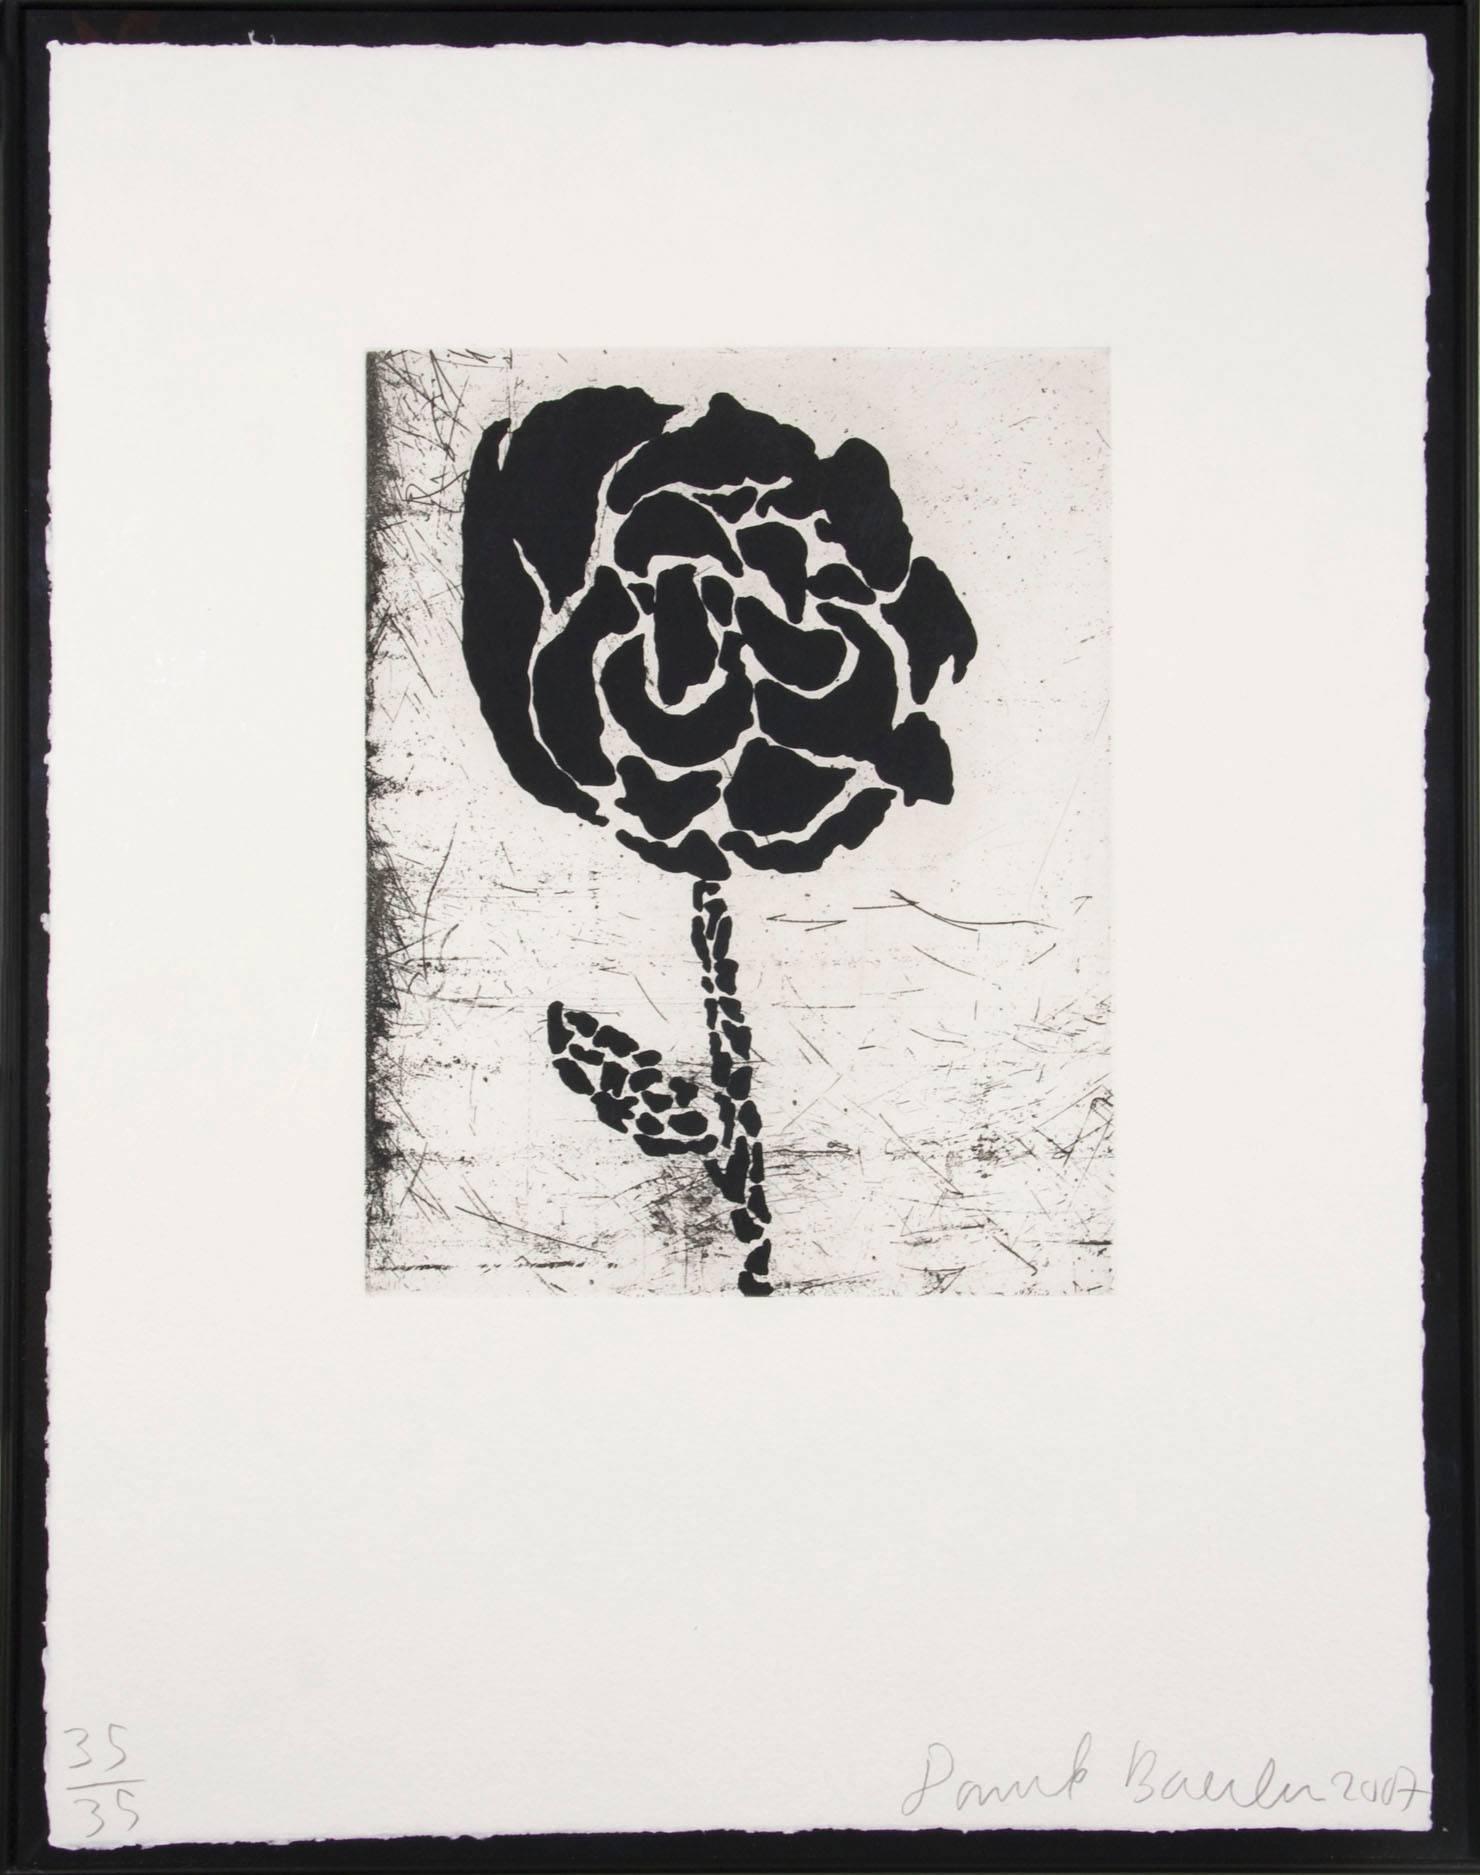 Flower I - Print by Donald Baechler